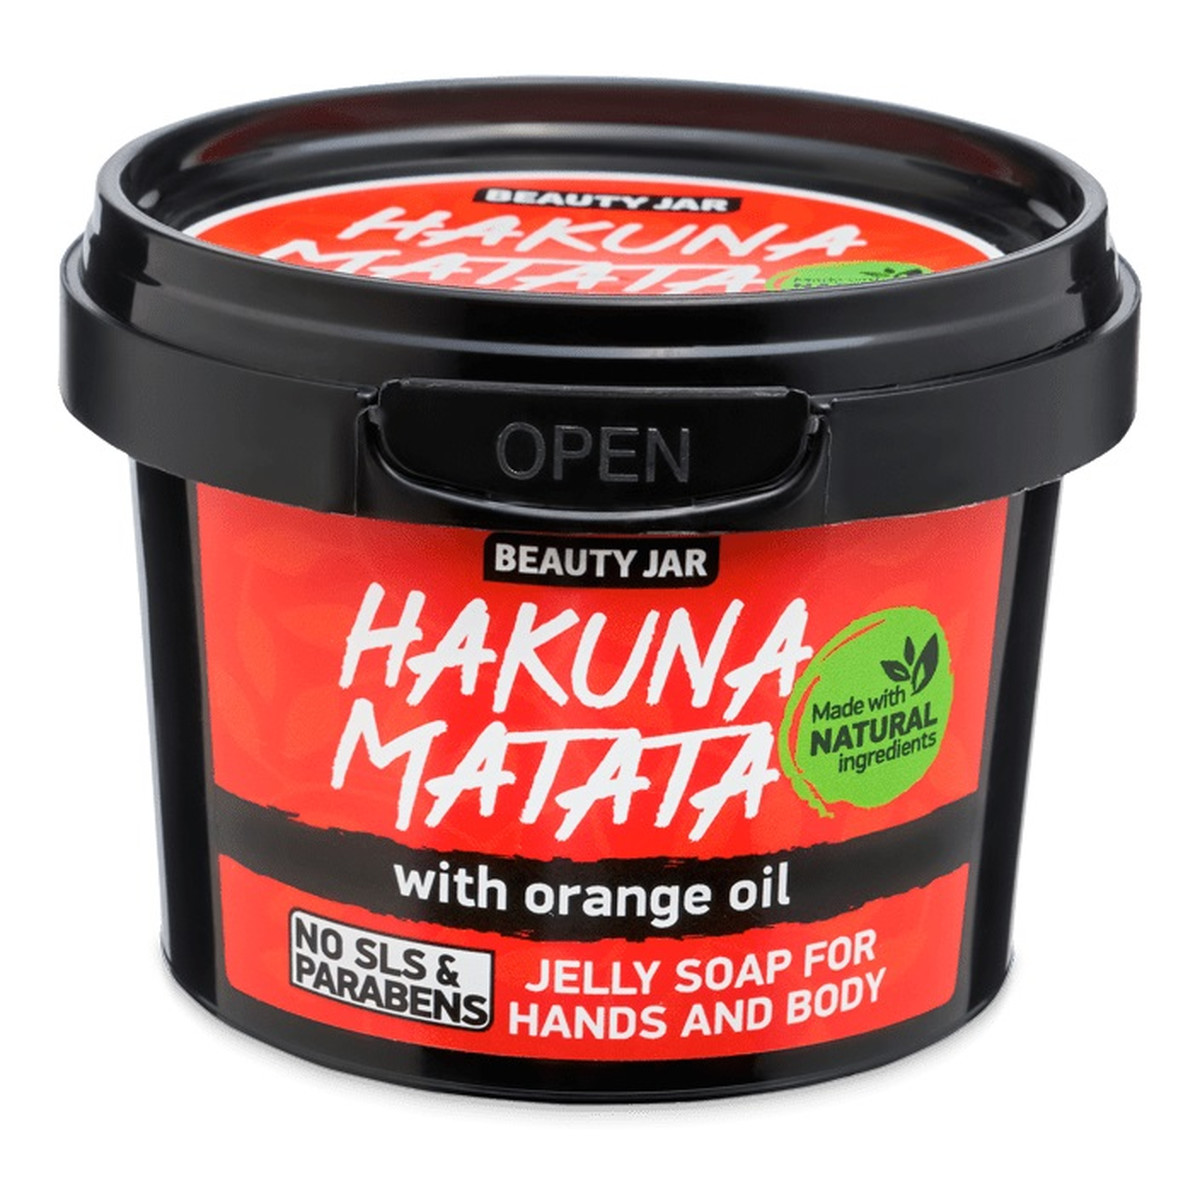 Beauty Jar Hakuna Matata Żelowe mydło do rąk i ciała z olejkiem pomarańczowym 130g